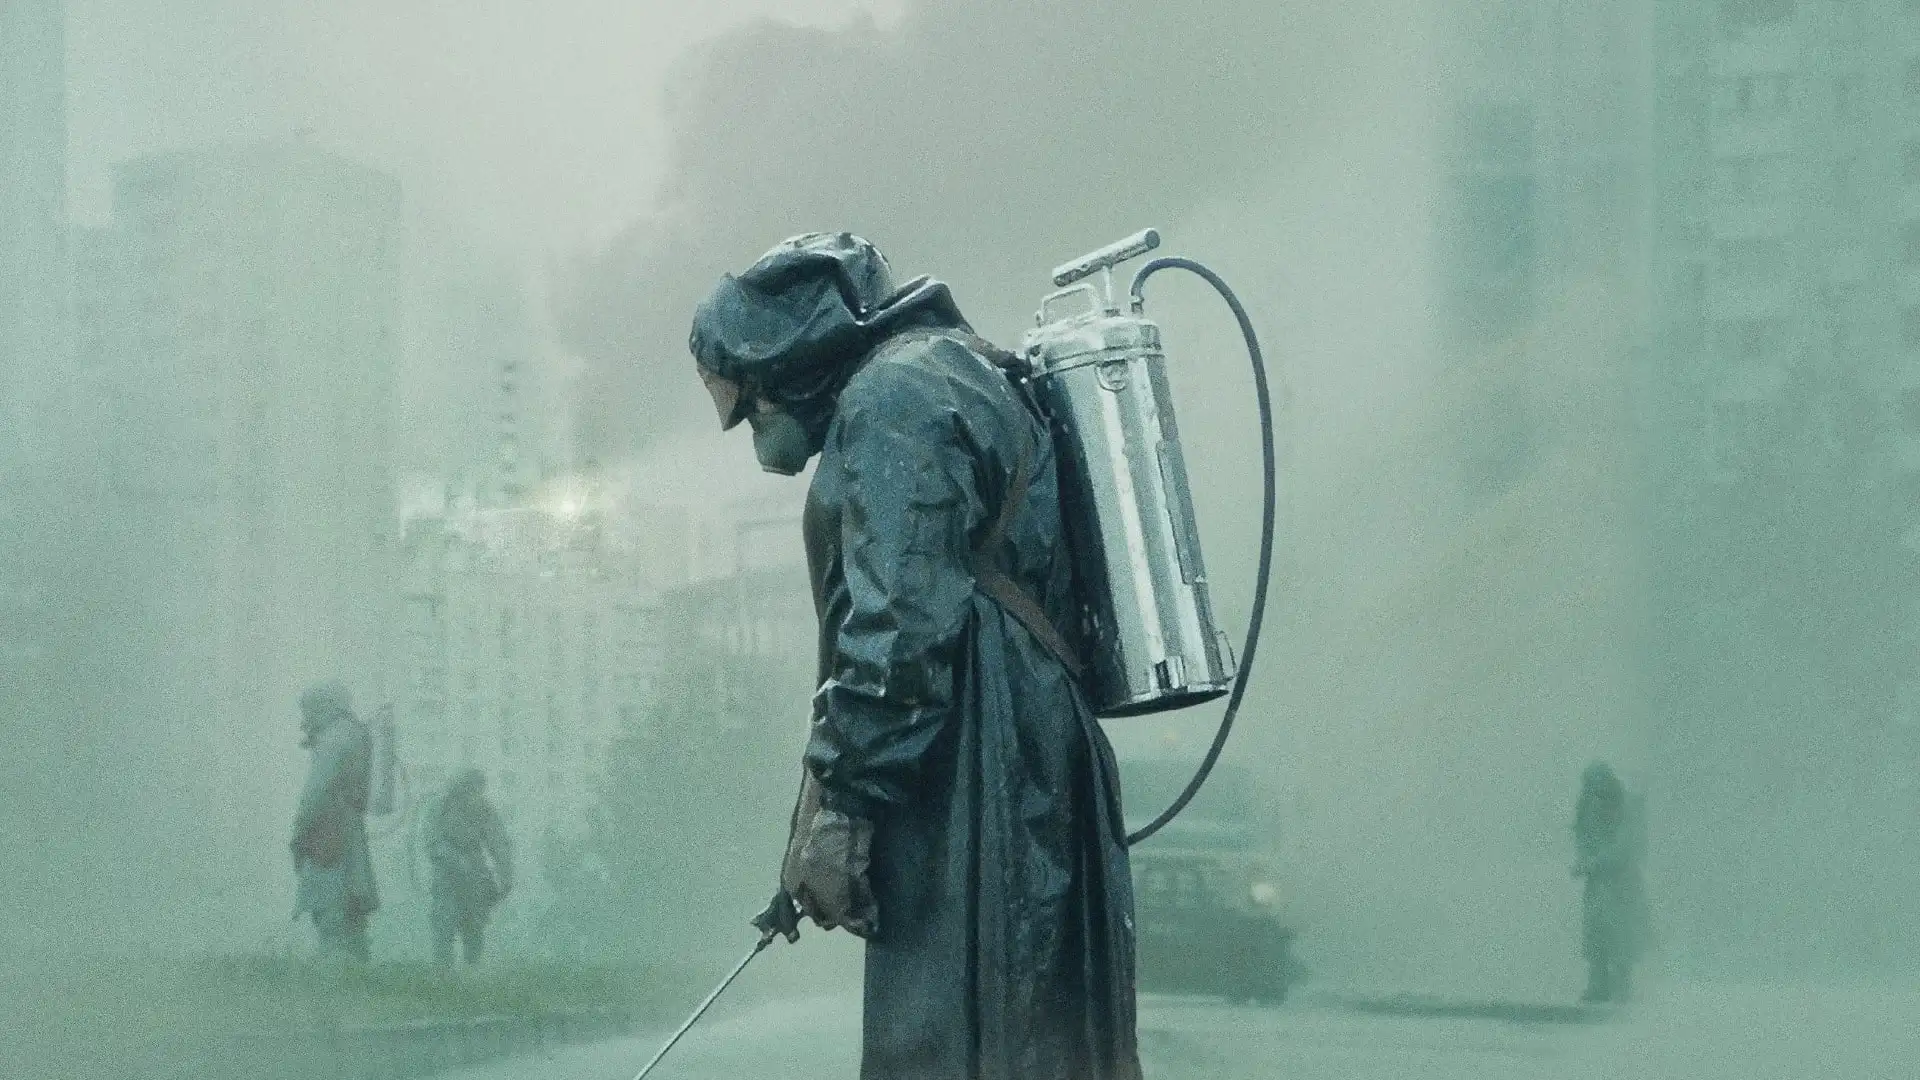 Personas realizan tareas de limpieza y contención tras el accidente de la central núclear en la aclamada serie Chernobyl